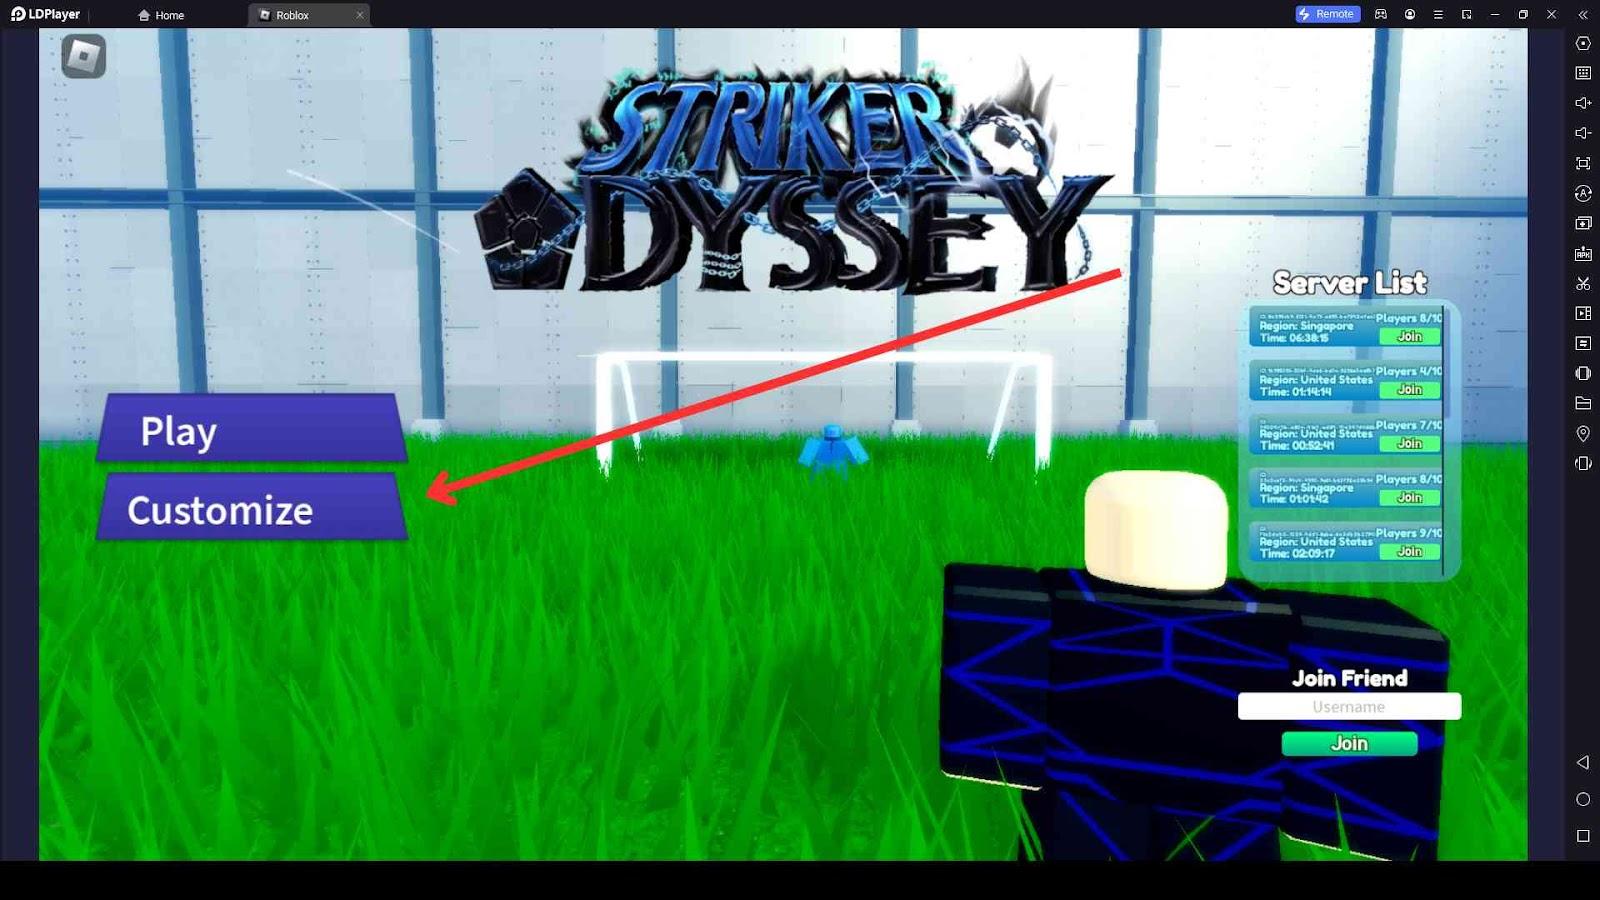 Striker Odyssey codes December 2023